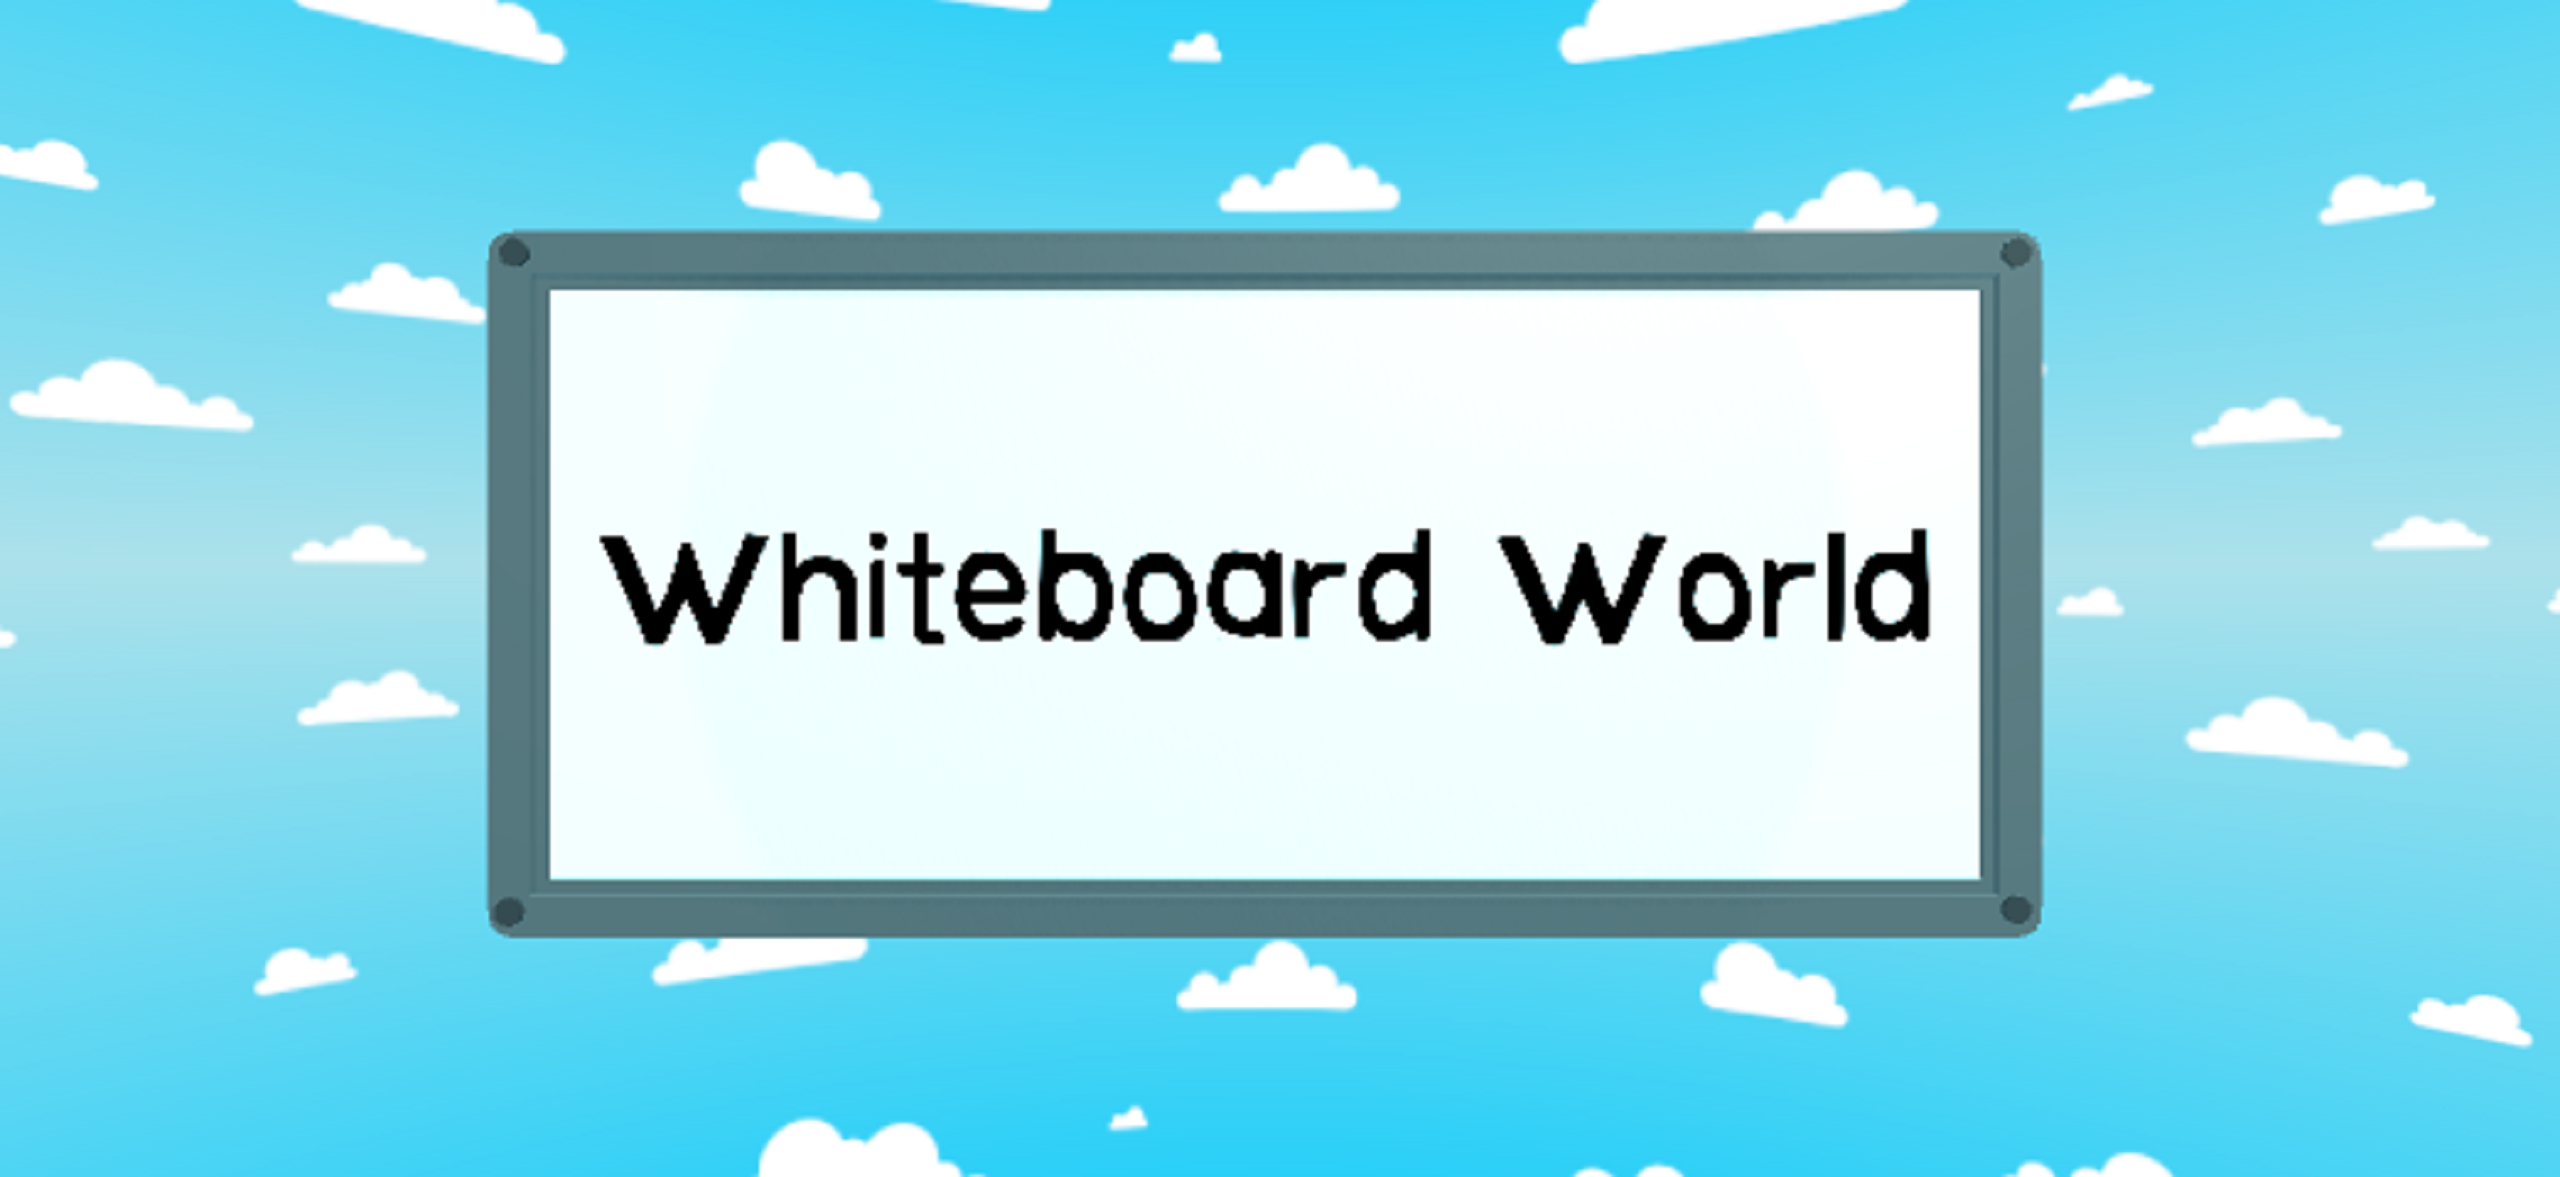 Whiteboard World